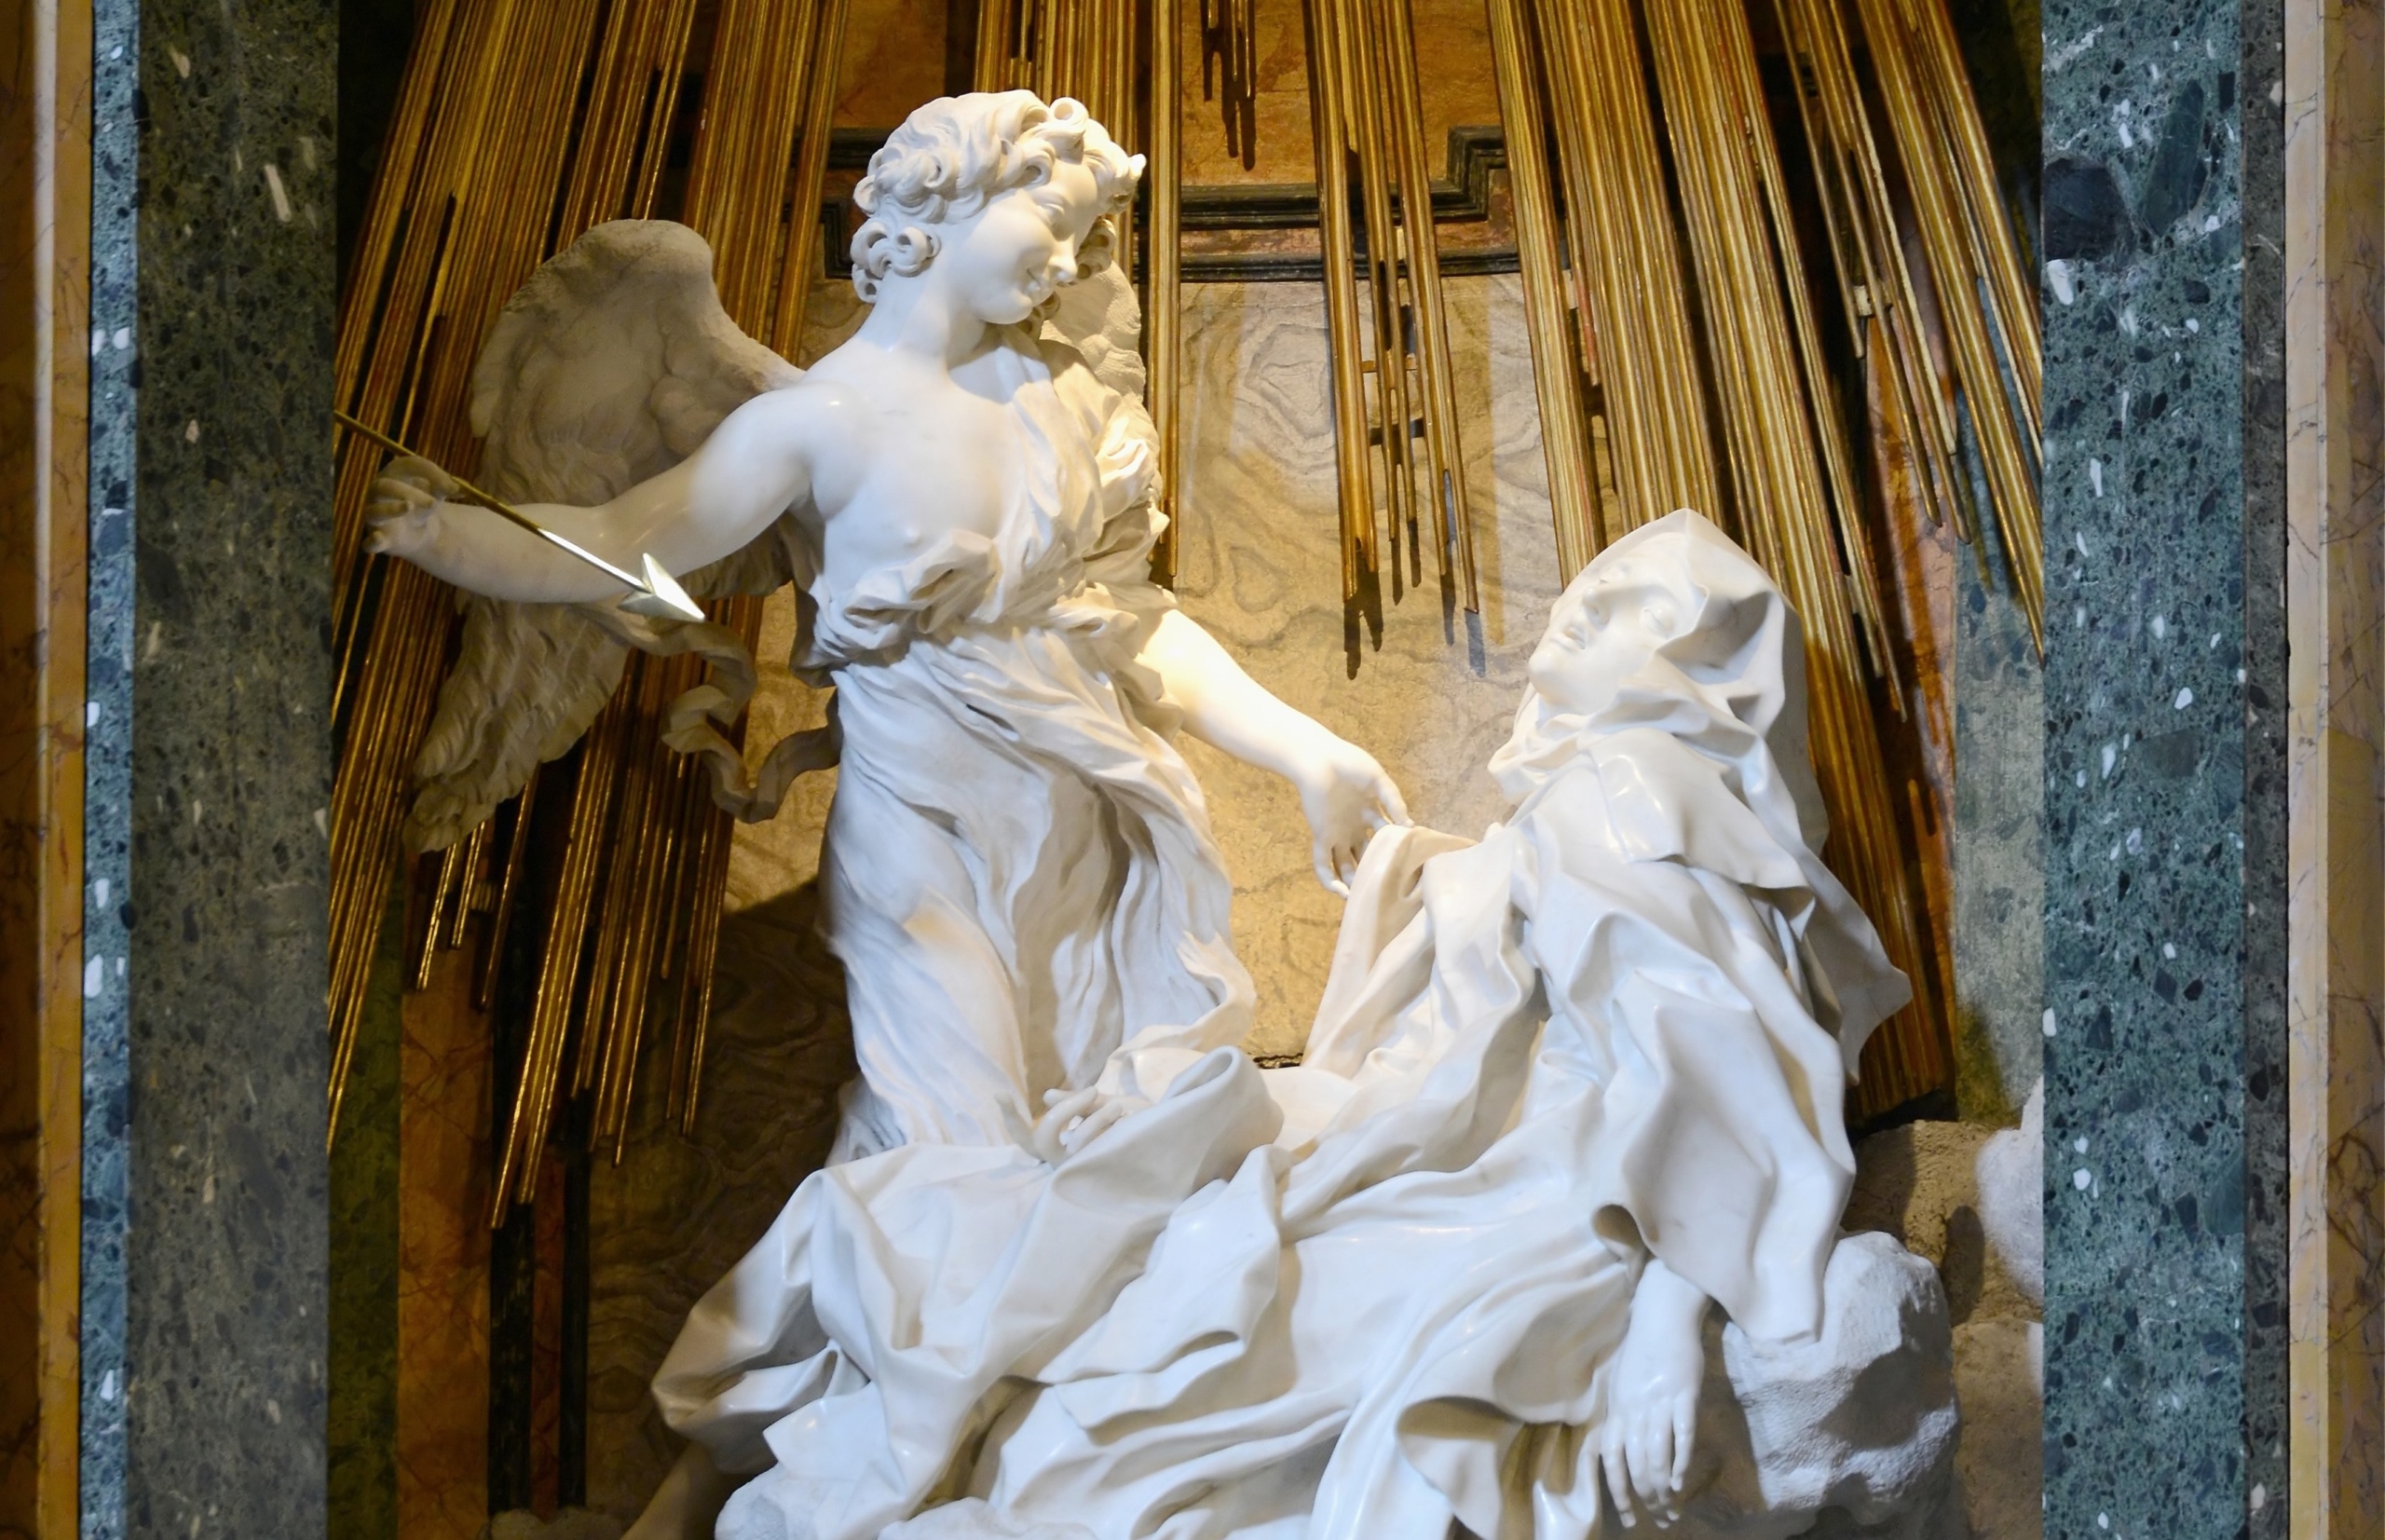 Chi tiết của bức tượng “Ecstasy of Saint Teresa” (Trạng thái nhập định của Thánh Teresa) do điêu khắc gia Gian Lorenzo Bernini tạc năm 1647–1652. Nhà nguyện Cornaro, Thánh Maria della Vittoria, Rome. (Ảnh: Tài liệu công cộng)